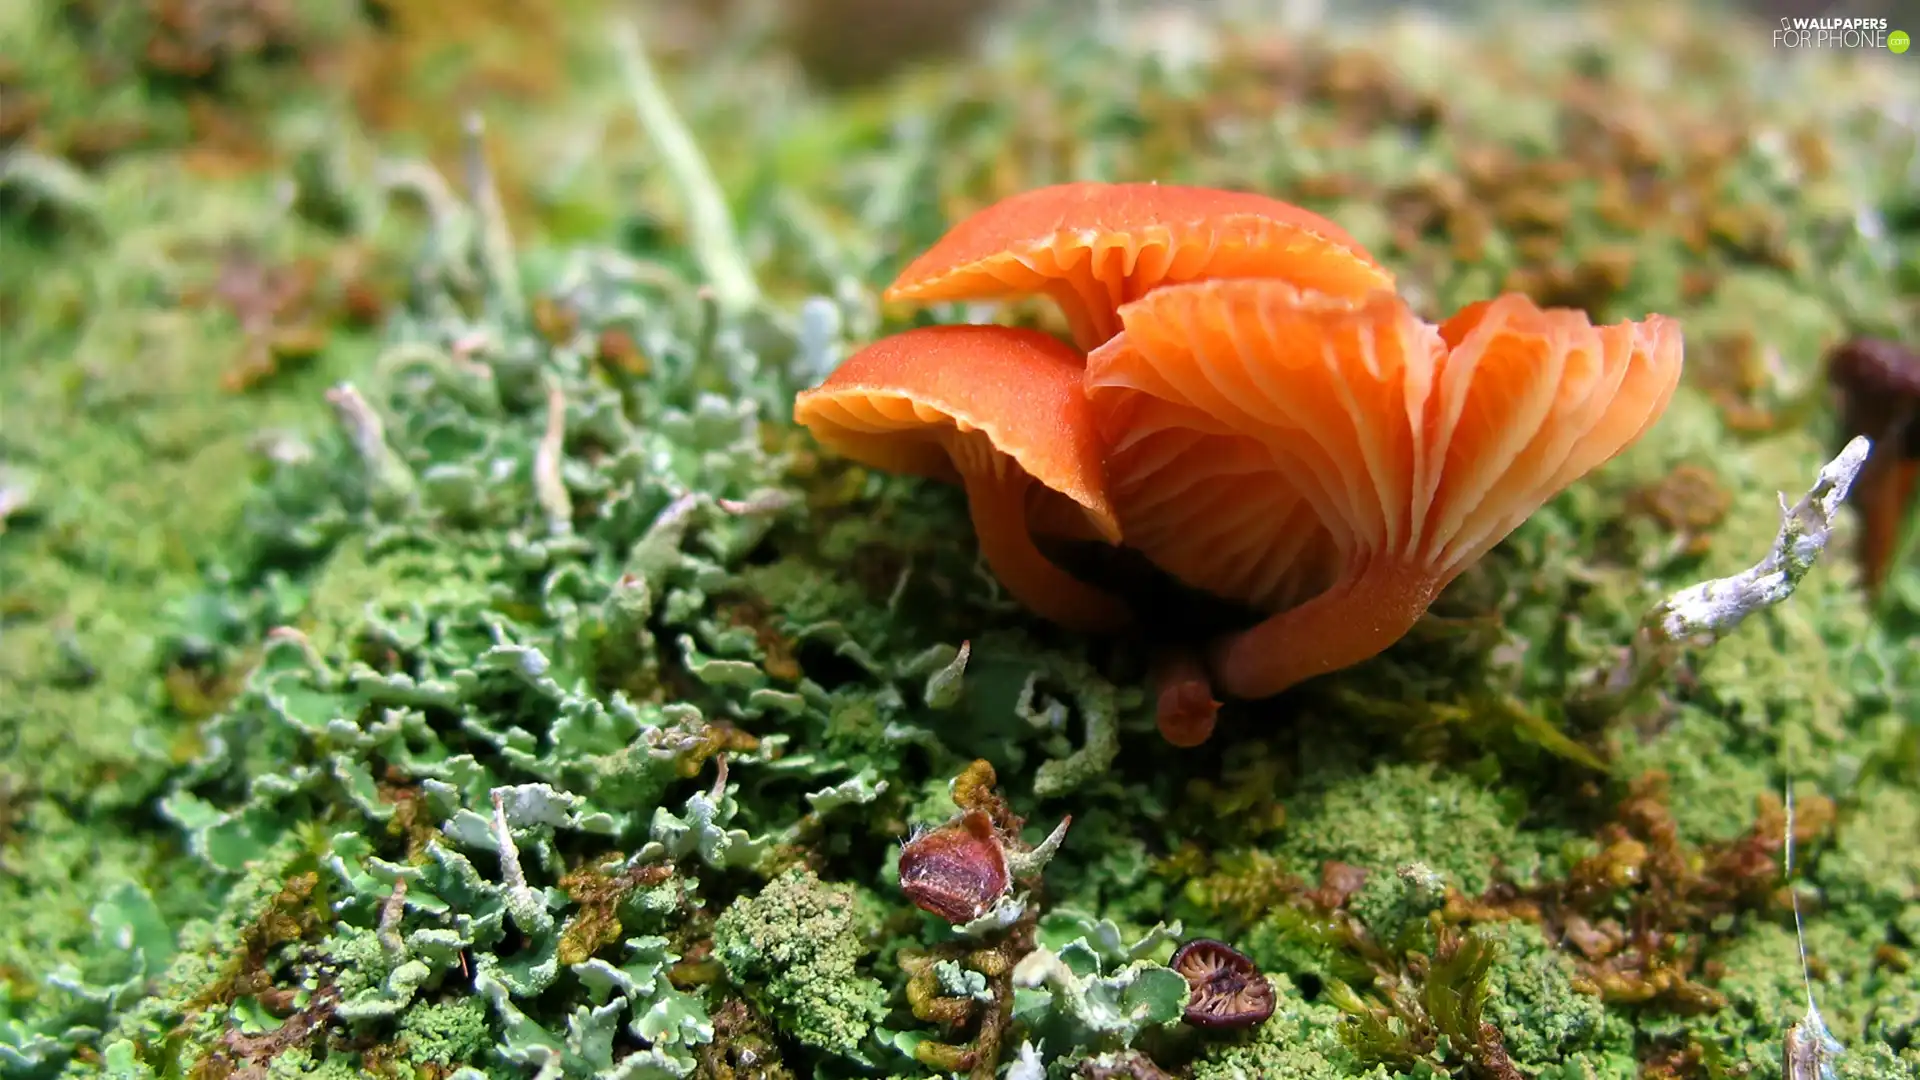 Orange, mushroom